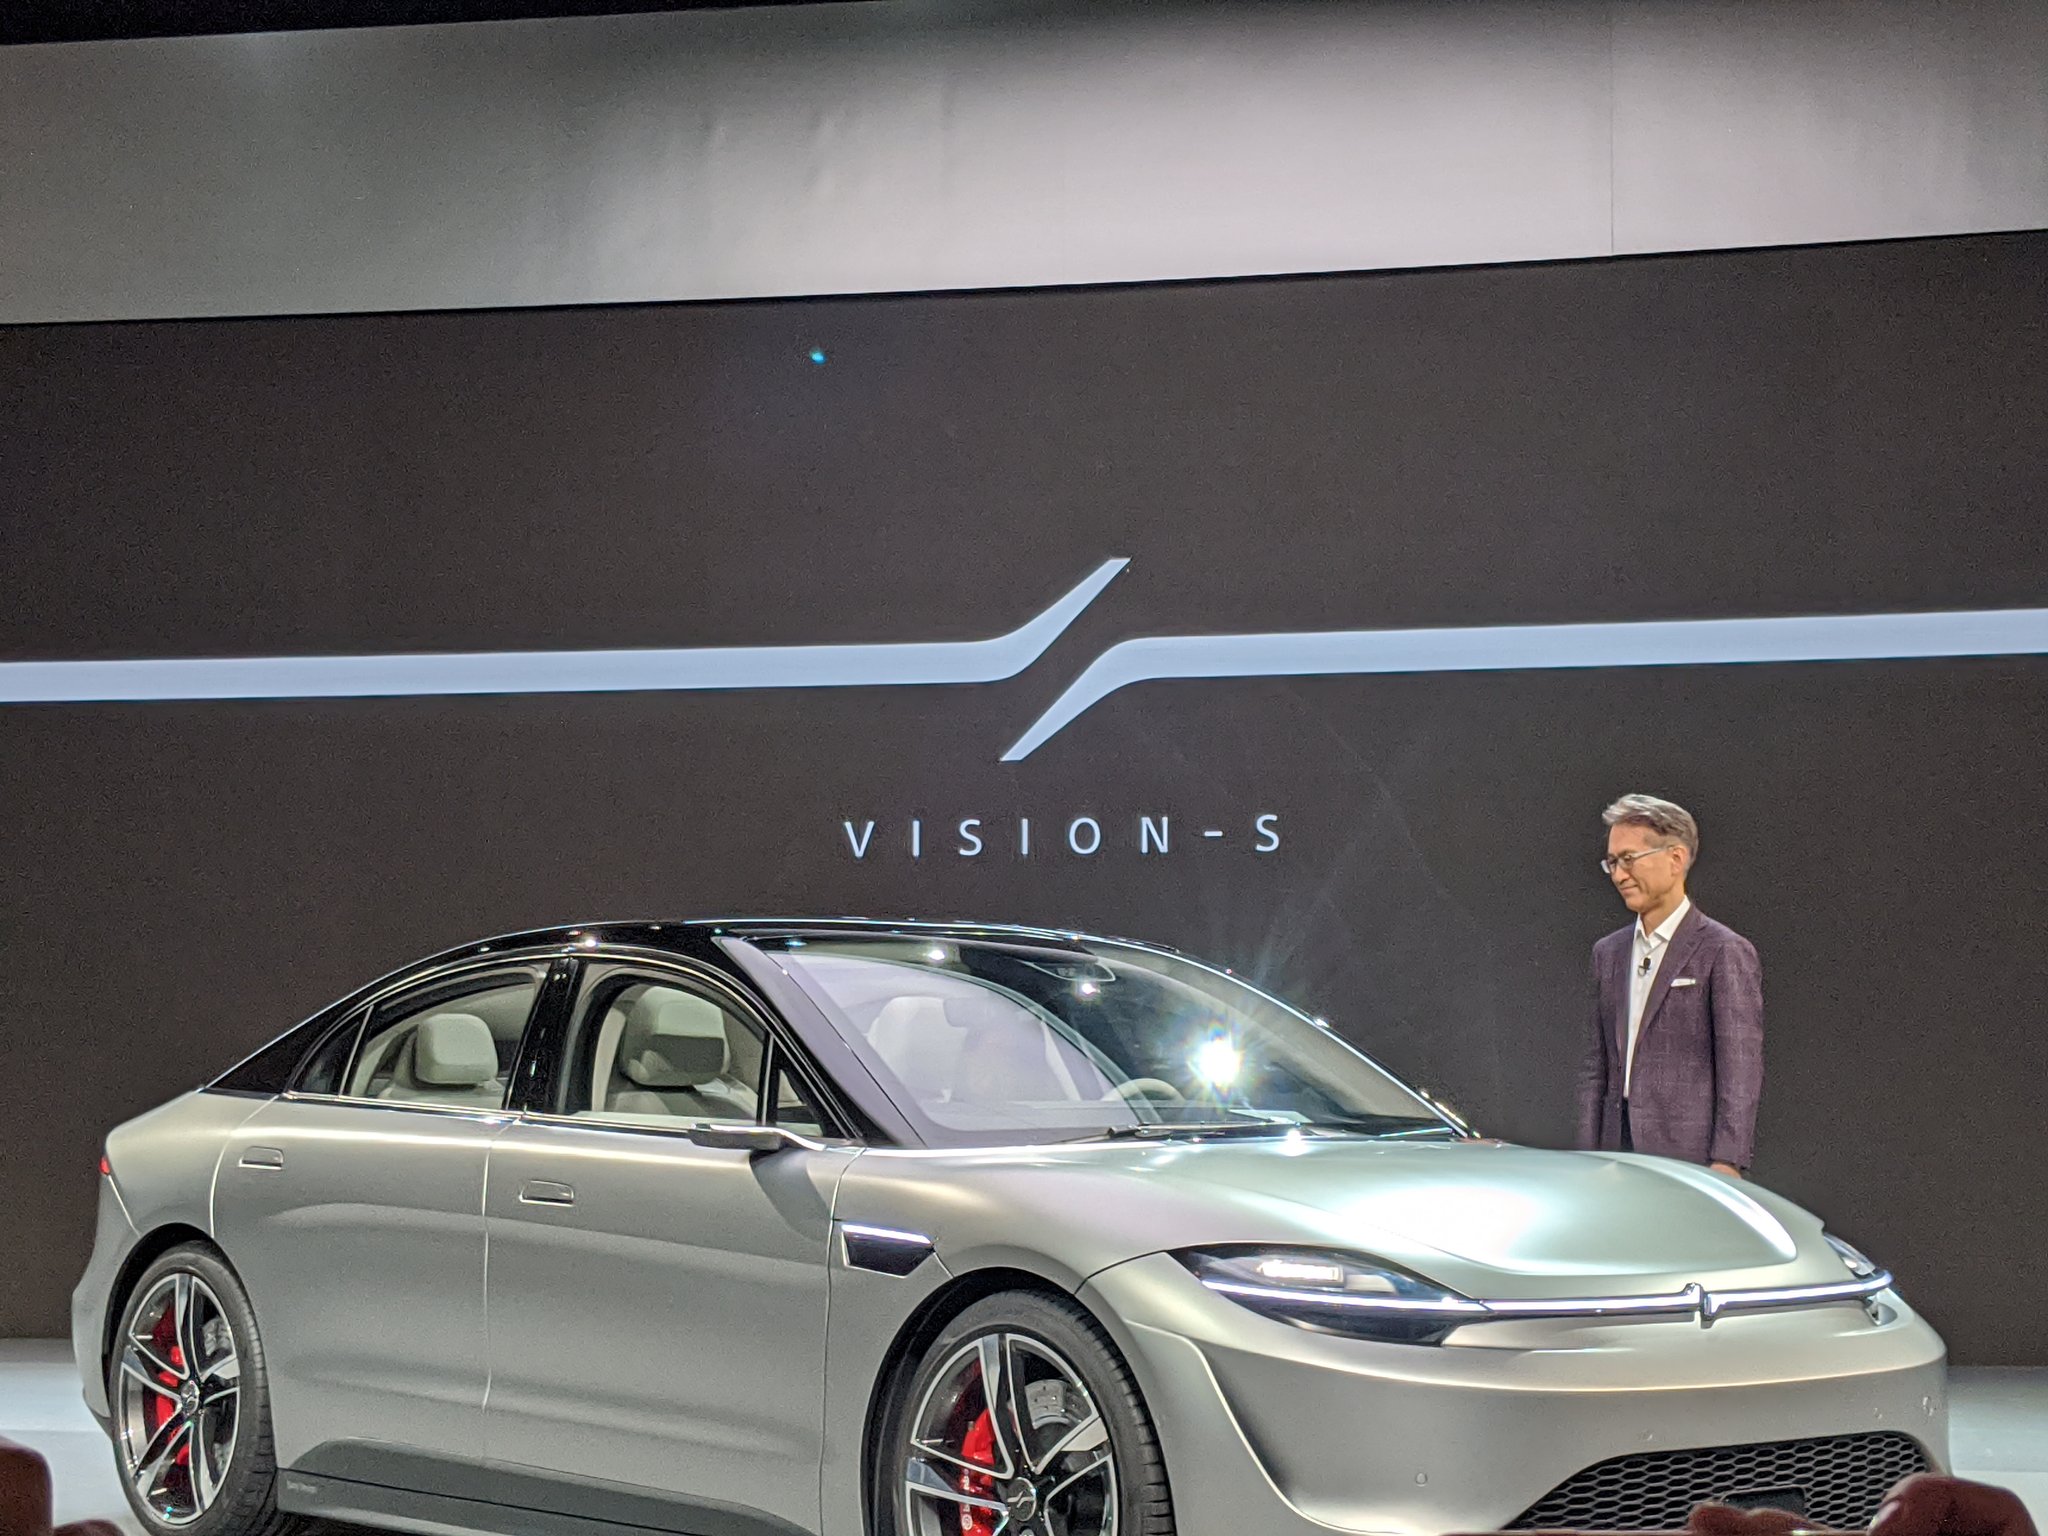 索尼计划2020财年测试自动驾驶汽车 但无自产汽车计划